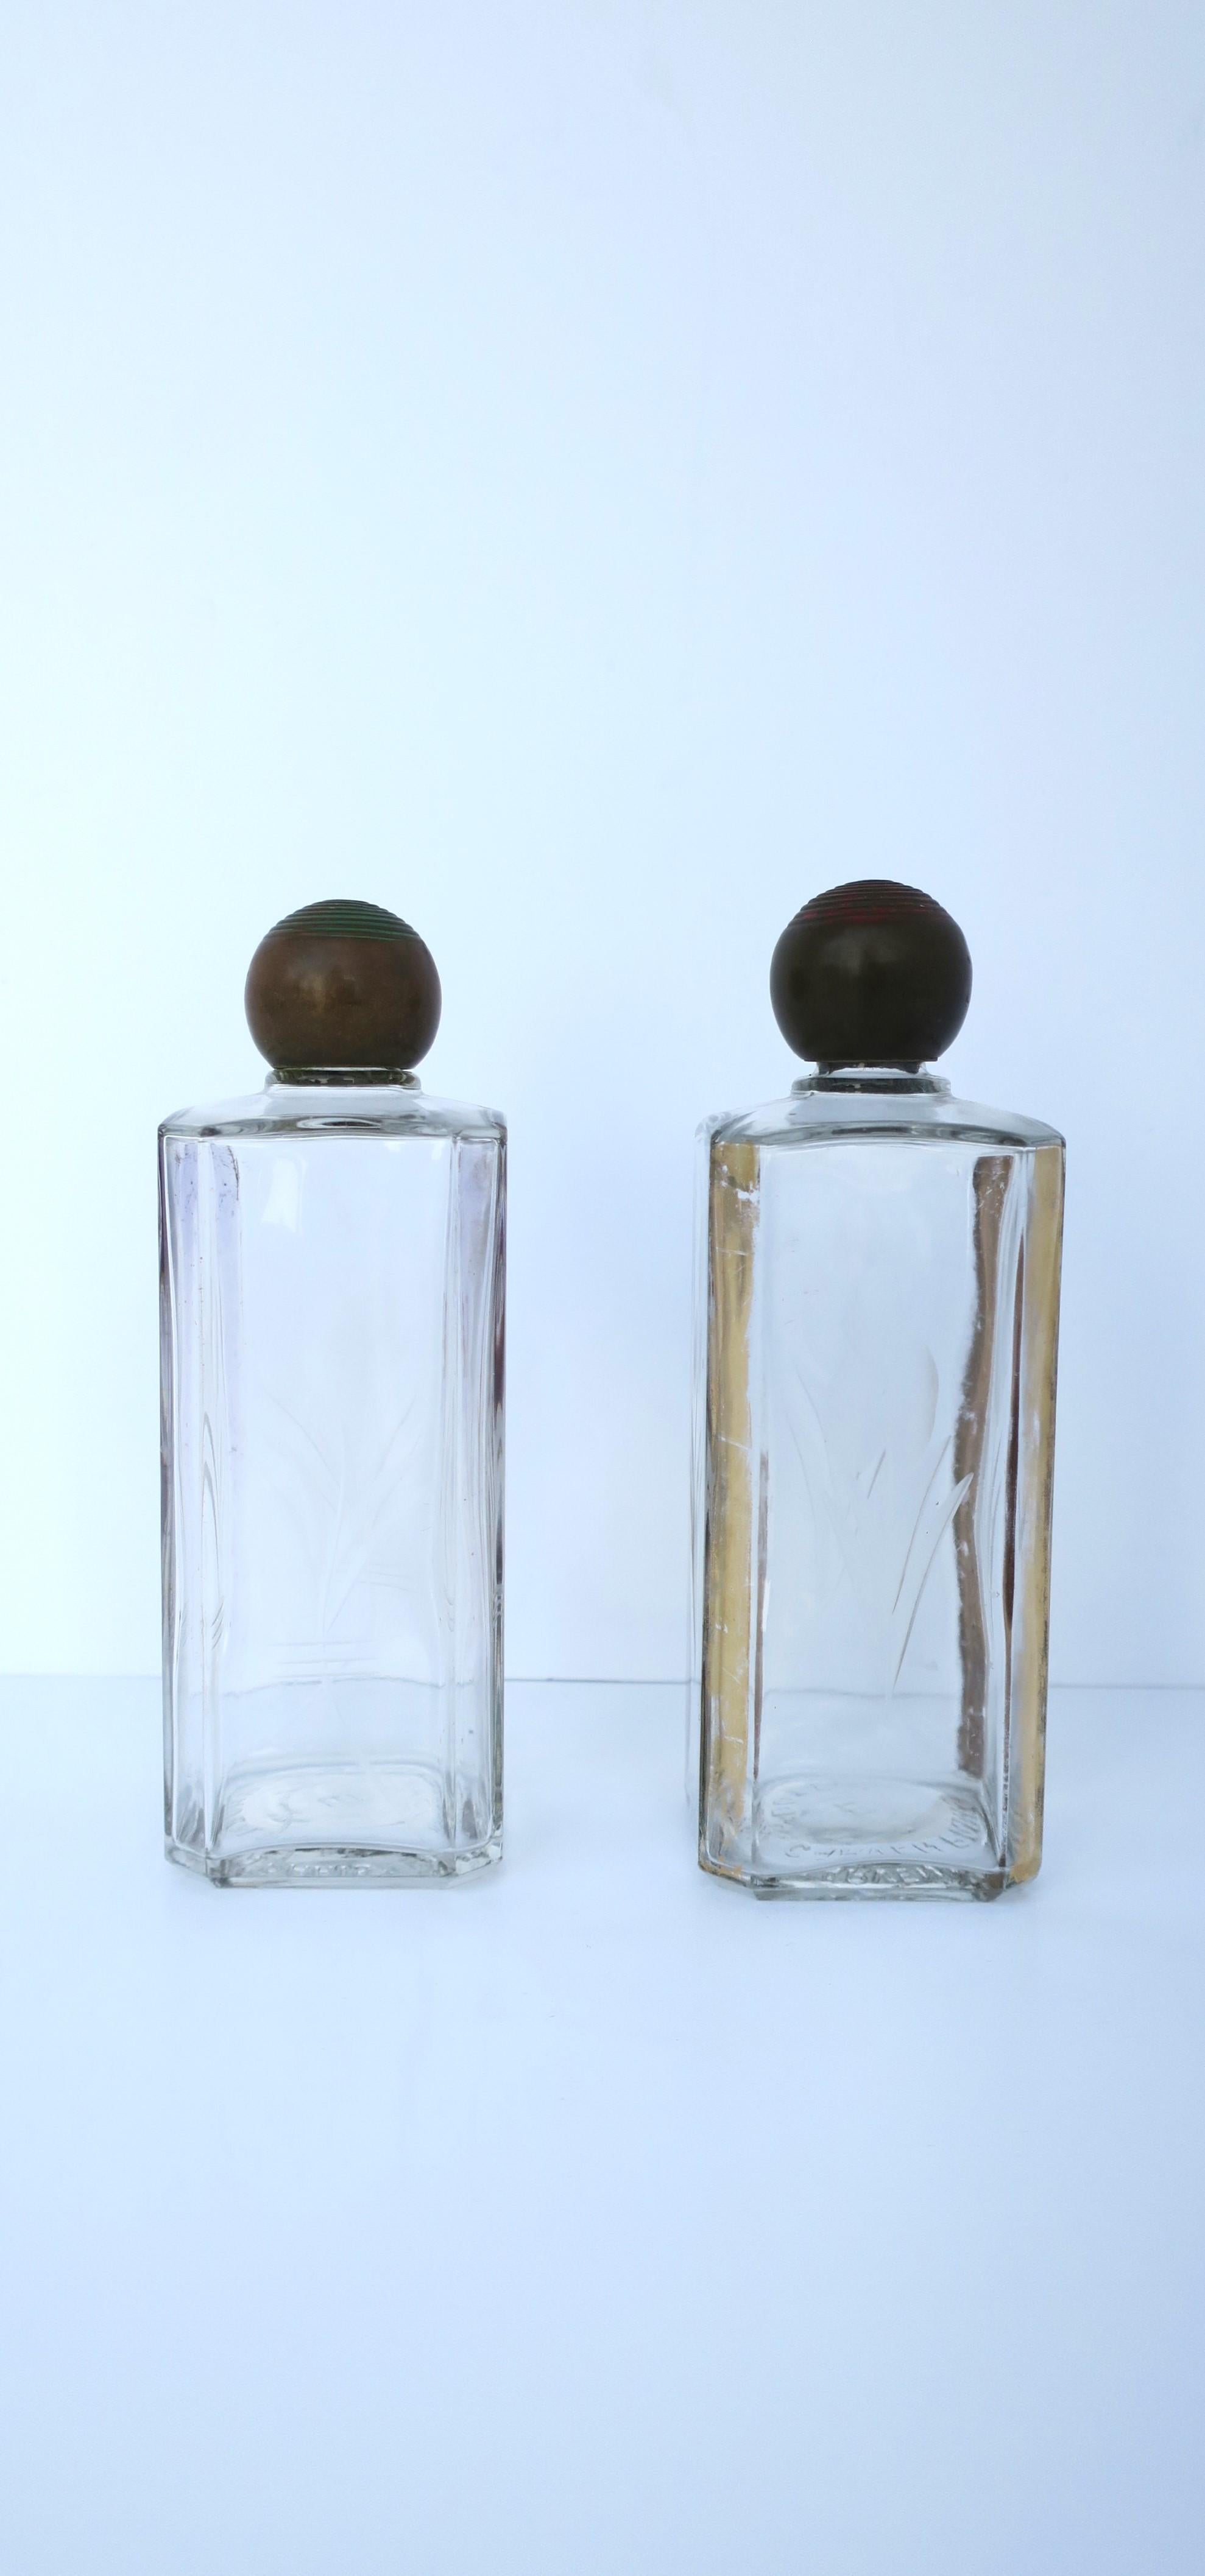 Magnifique paire de flacons de parfum en verre de style Art déco français, avec un motif gravé, des accents dorés et des bouchons en bronze, provenant de la maison de mode de luxe Carven, vers le début du XXe siècle, années 1940, Paris, France. Les